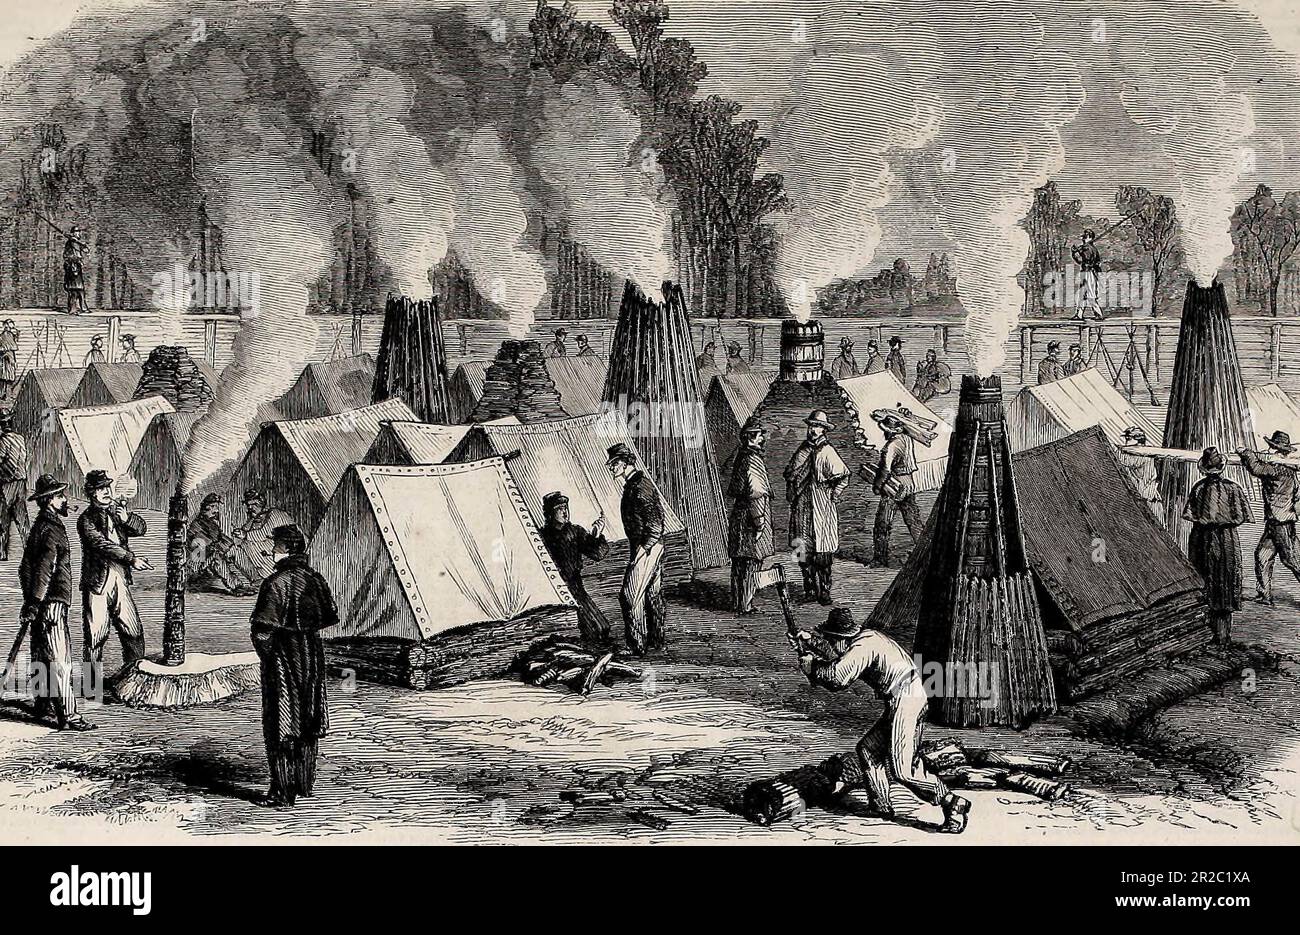 Scena nella vita del campo - architettura di Chimney - i nostri soldati ai loro fuochi del campo - guerra civile americana - 1864 Foto Stock